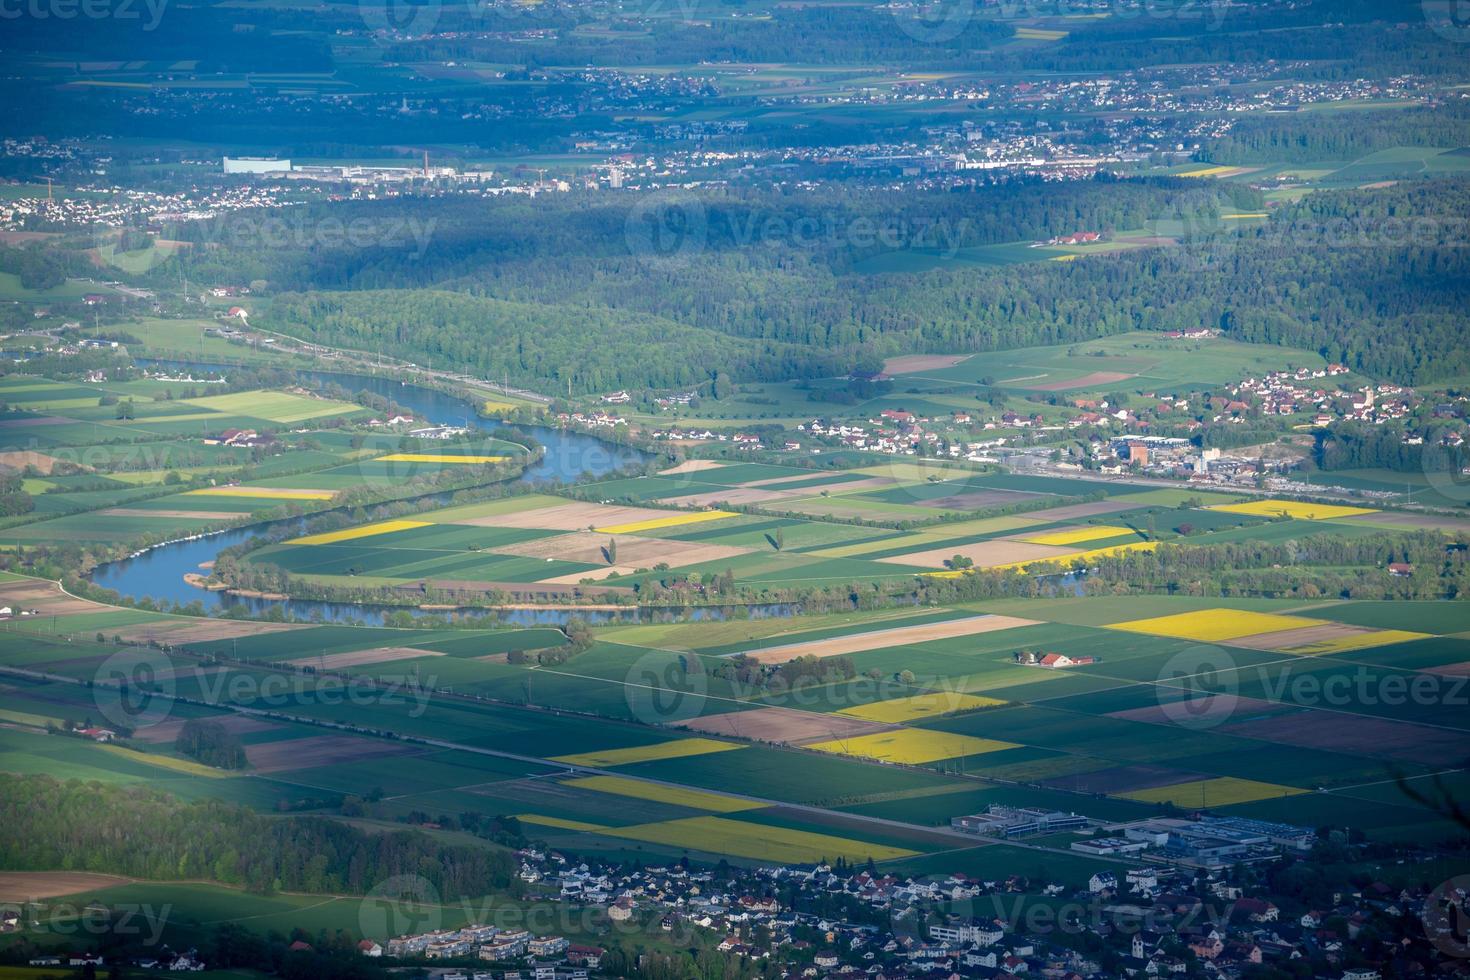 Antenne Aussicht von Berg Landschaft im Schweiz foto